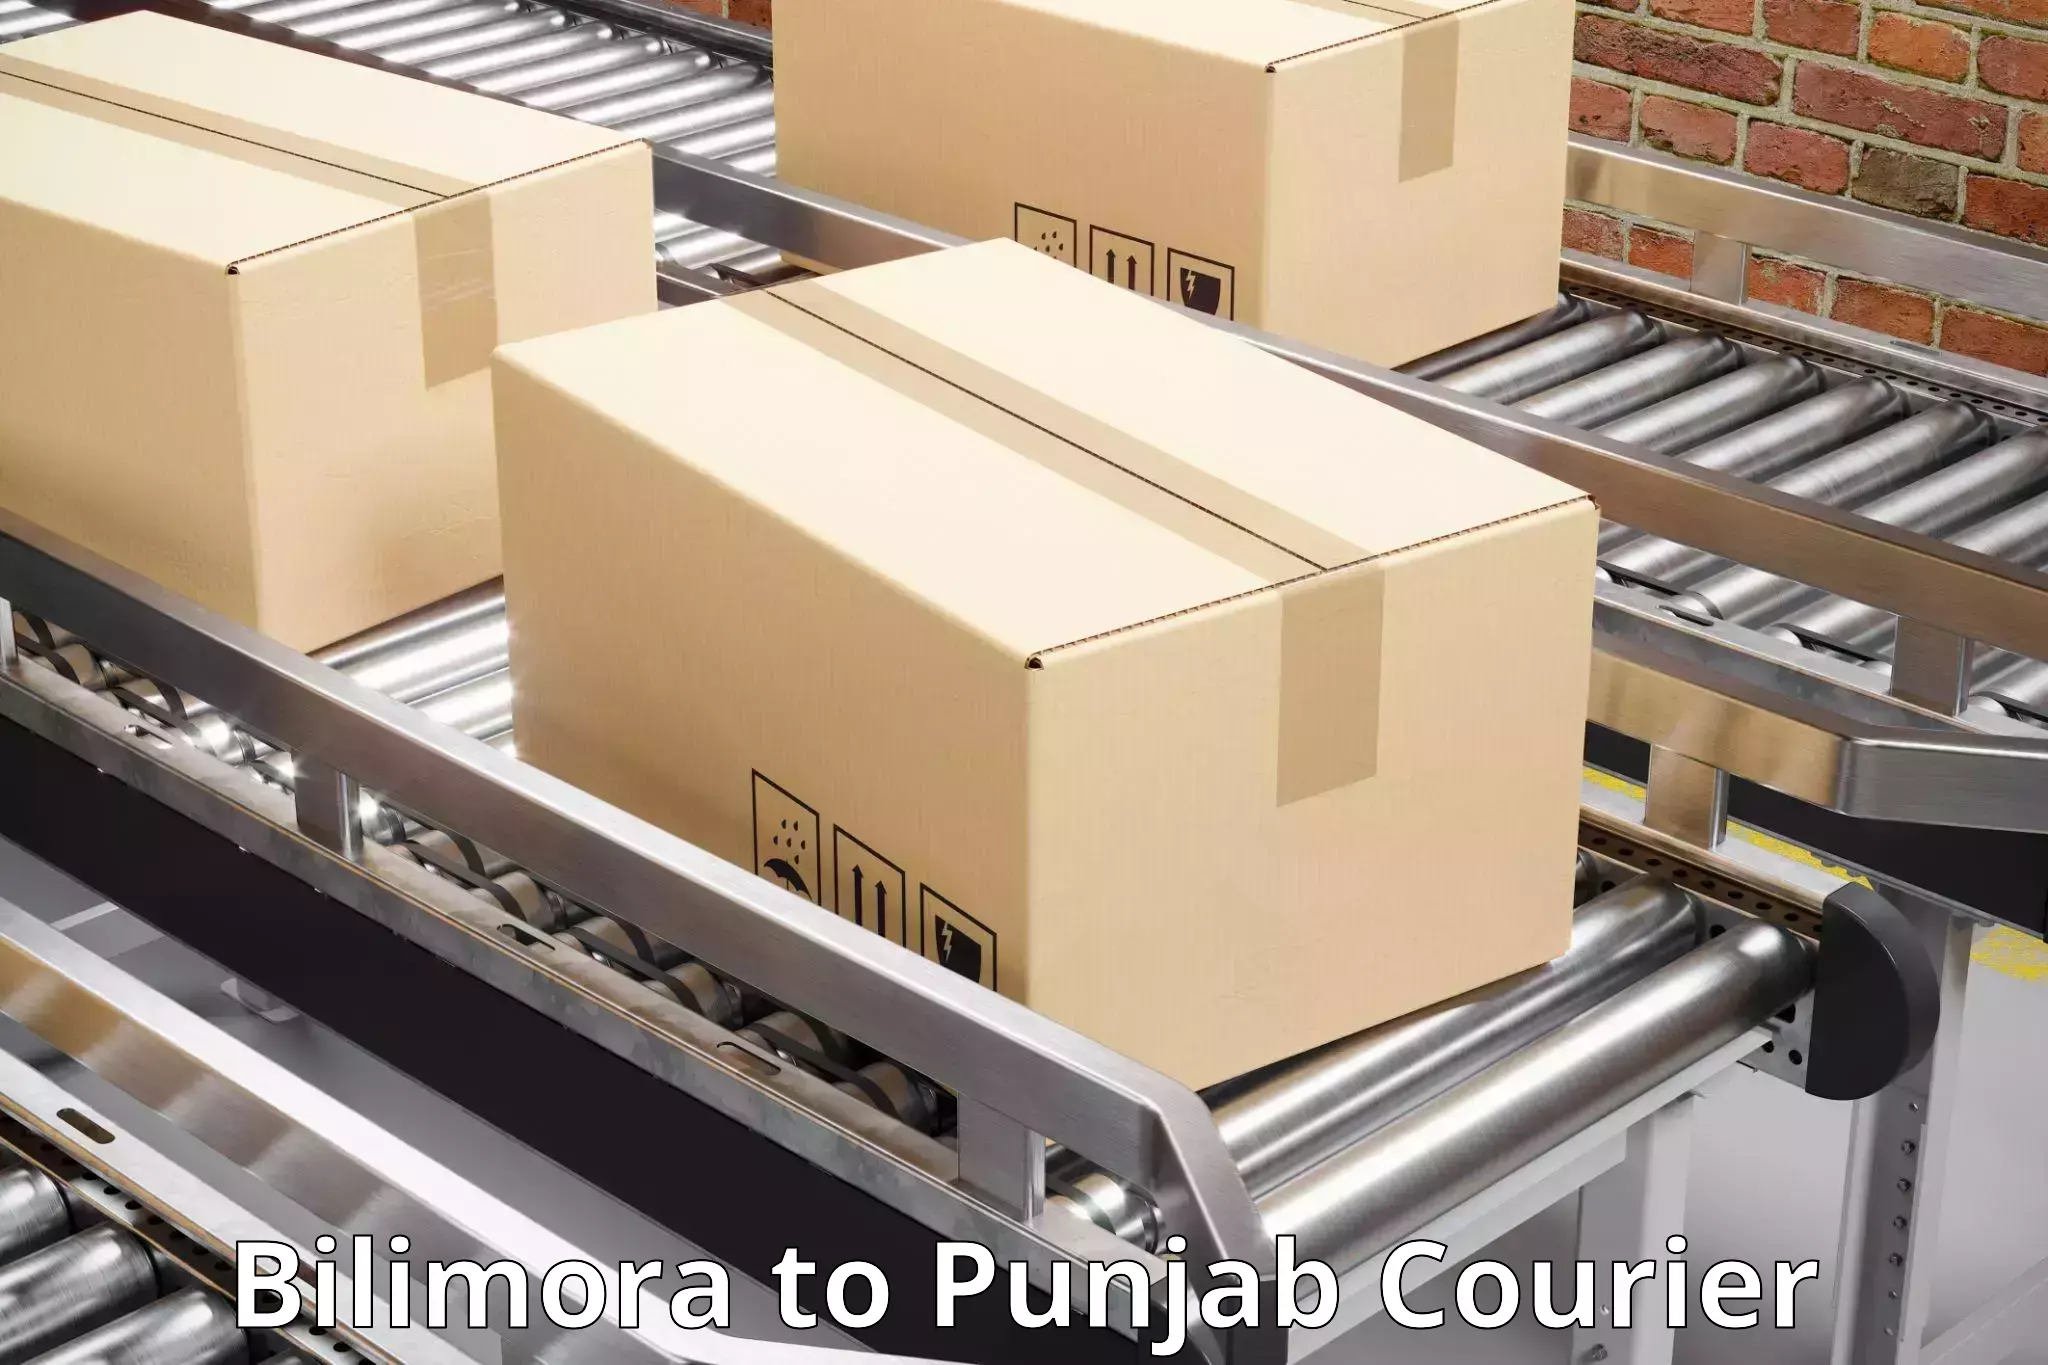 Courier service comparison Bilimora to Kotkapura